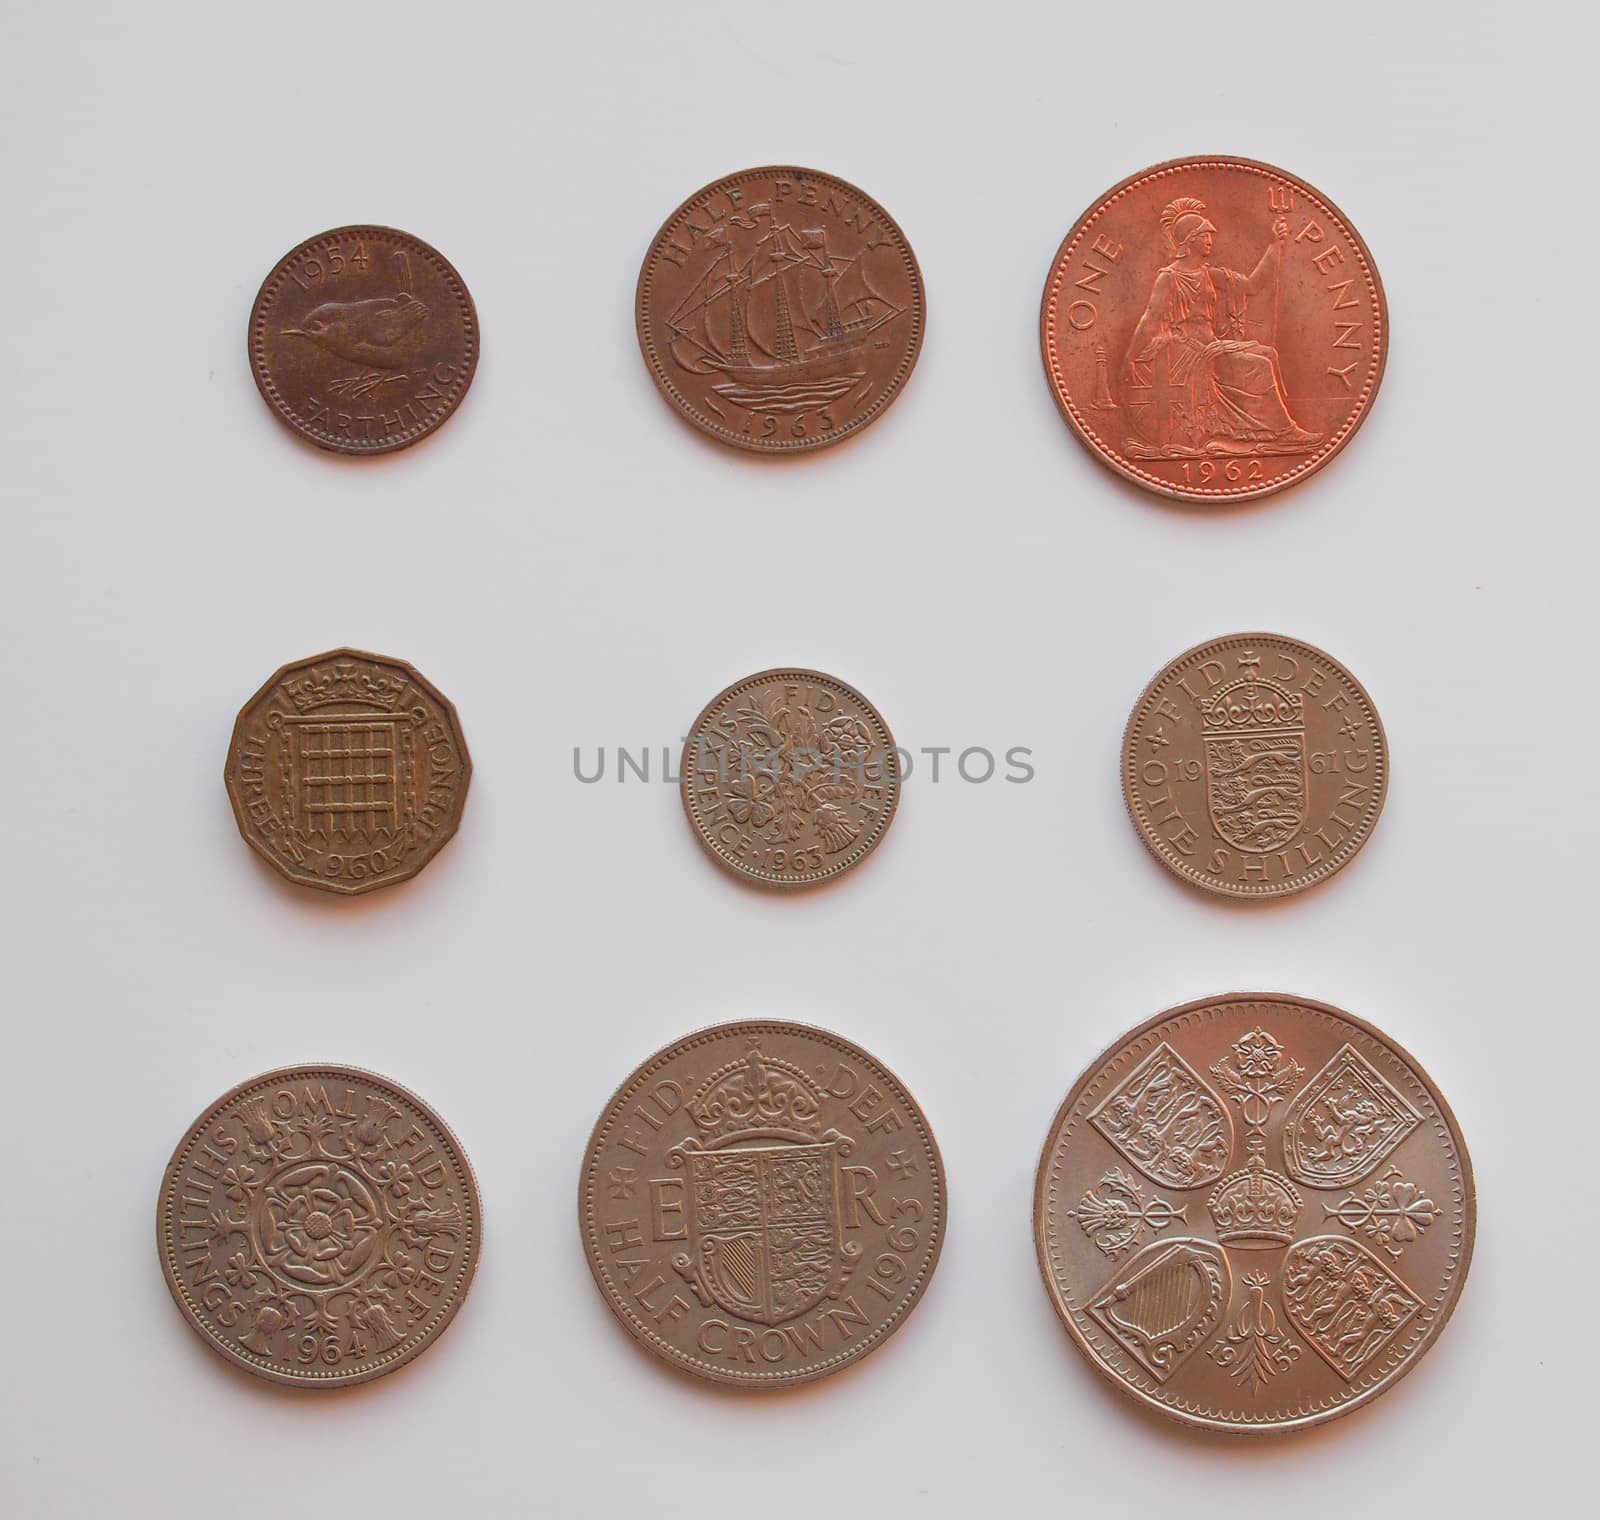 pre-decimal GBP coins full series - circulating in the UK until 1971